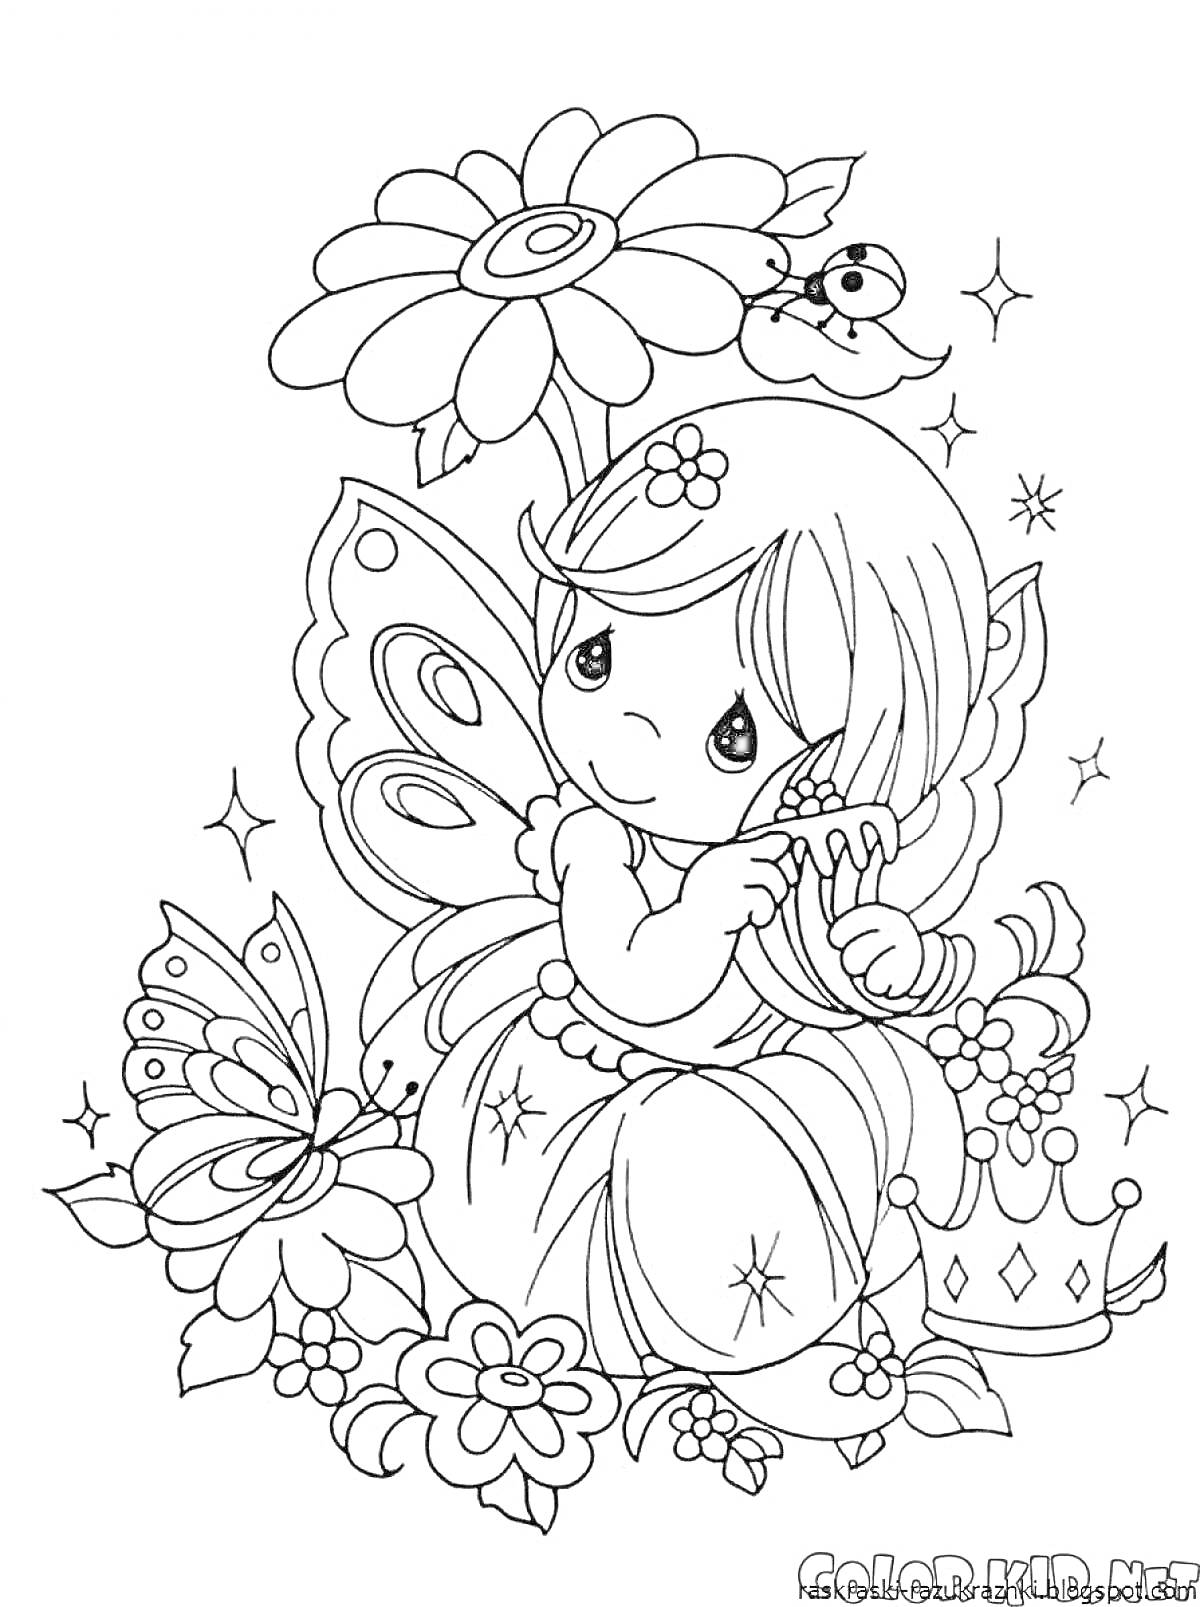 Раскраска Фея с цветком, бабочкой, короной и птицей на ветке